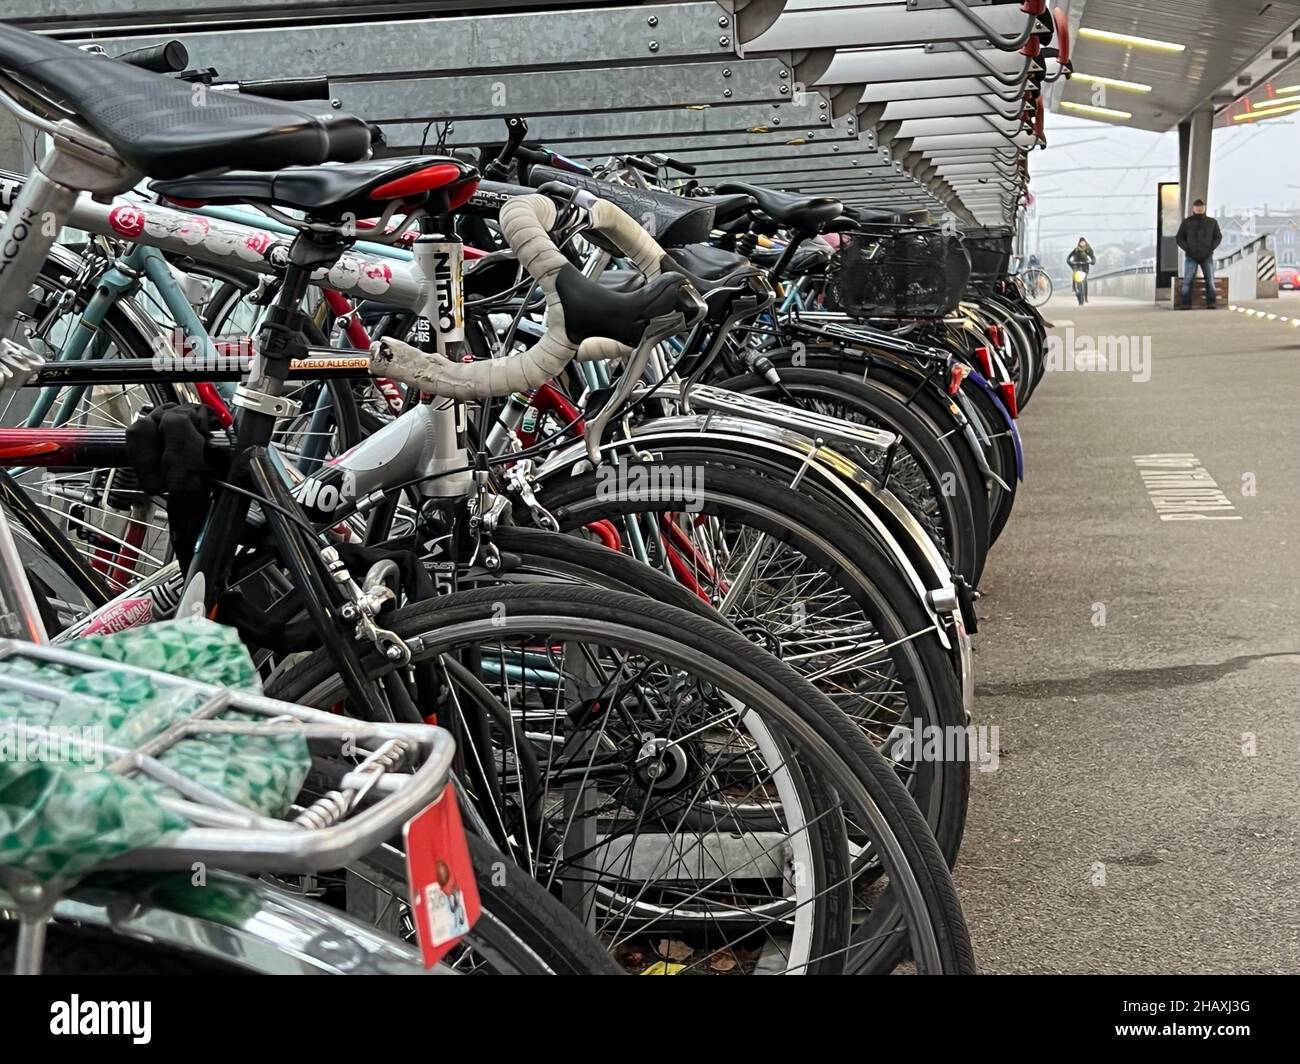 Biciclette parcheggiate alla fermata dell'autobus presso la stazione ferroviaria di Hardbrücke a Zurigo. Sullo sfondo c'è una persona che guida una bicicletta su una pista ciclabile. Foto Stock